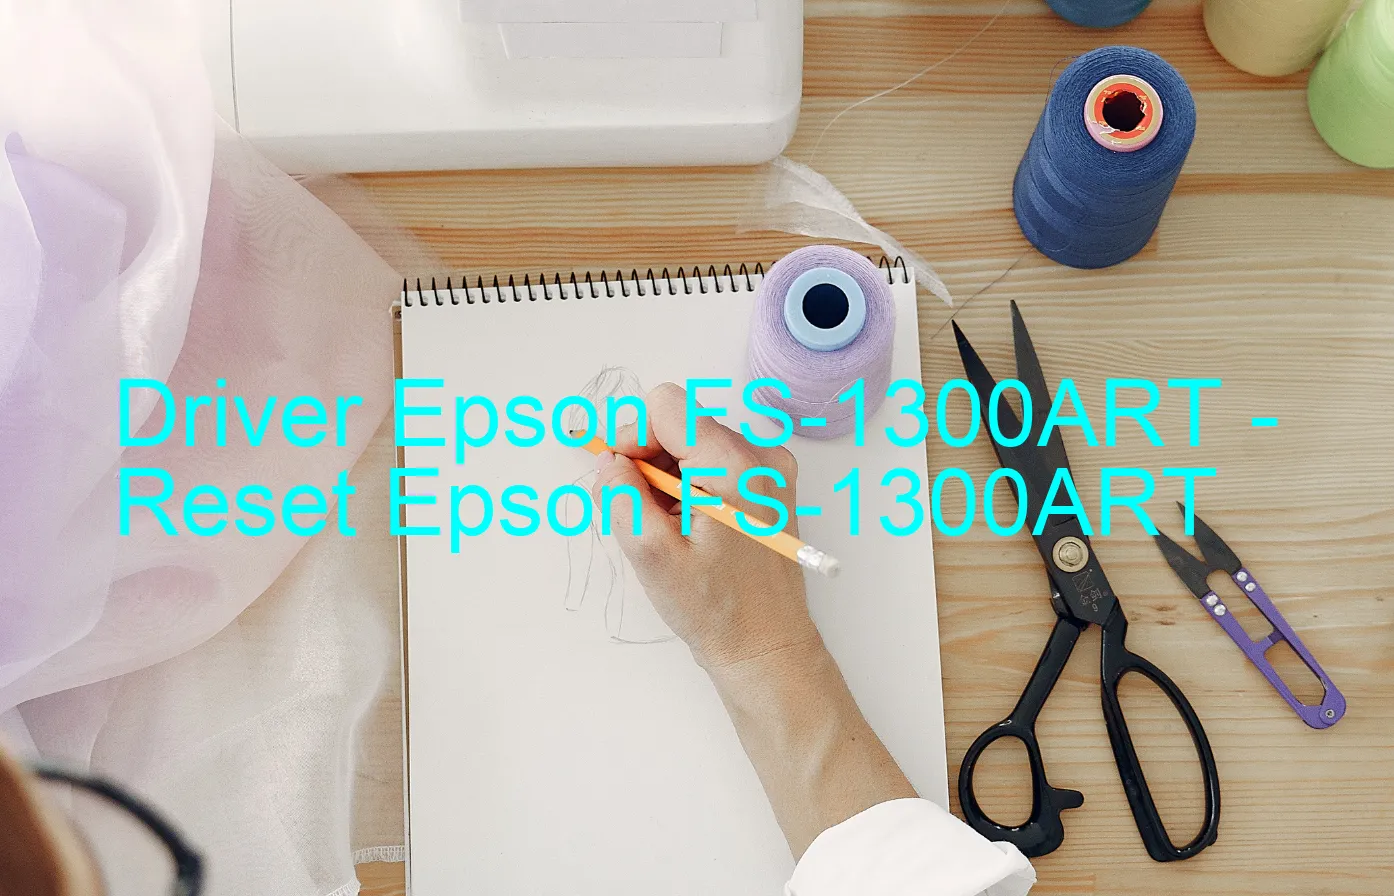 Epson FS-1300ARTのドライバー、Epson FS-1300ARTのリセットソフトウェア